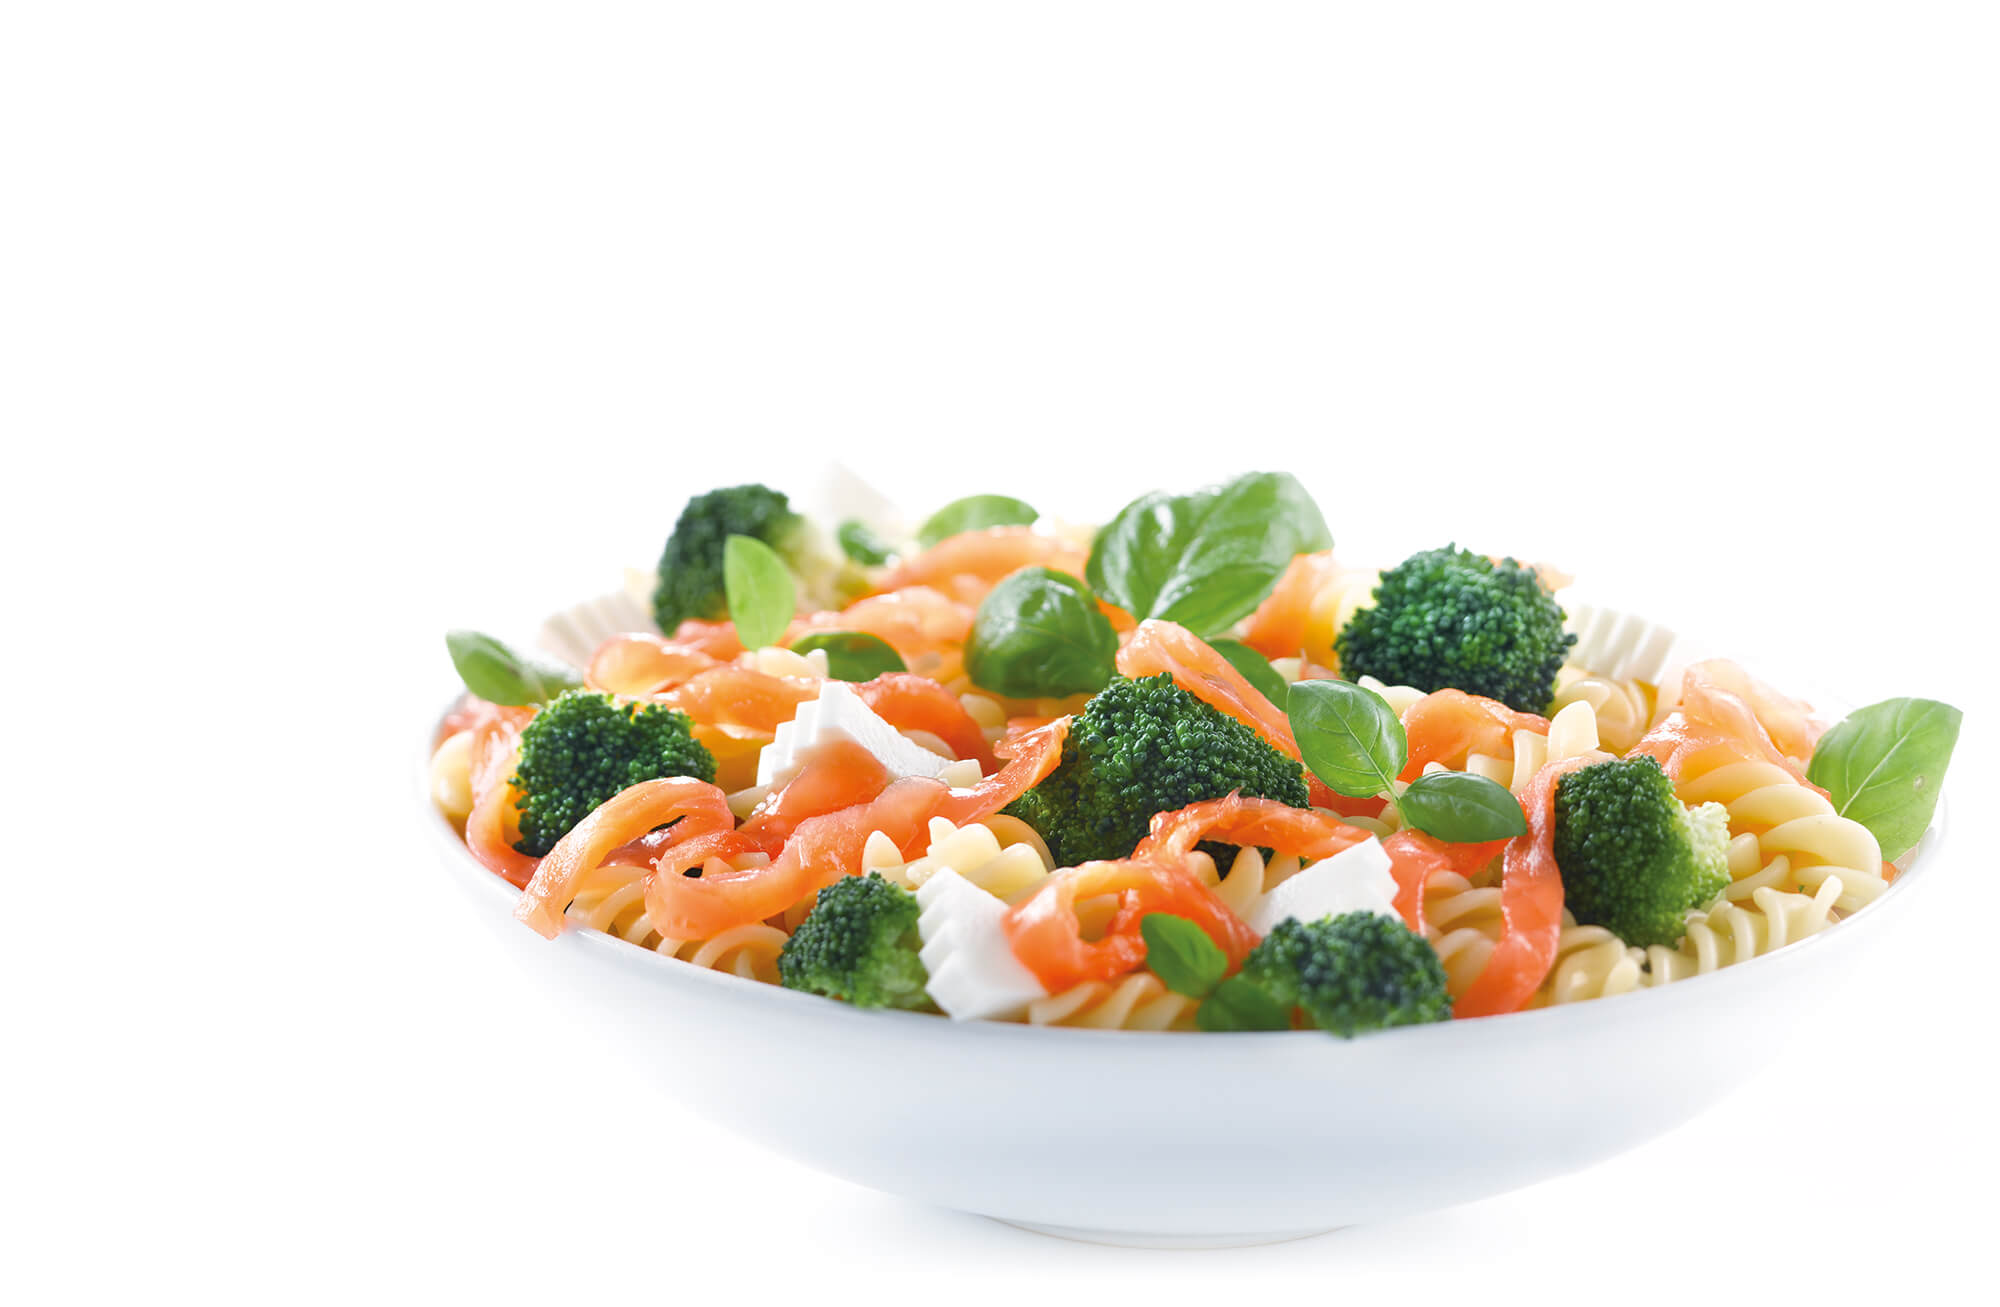 Pasta salad with smoked salmon and broccoli